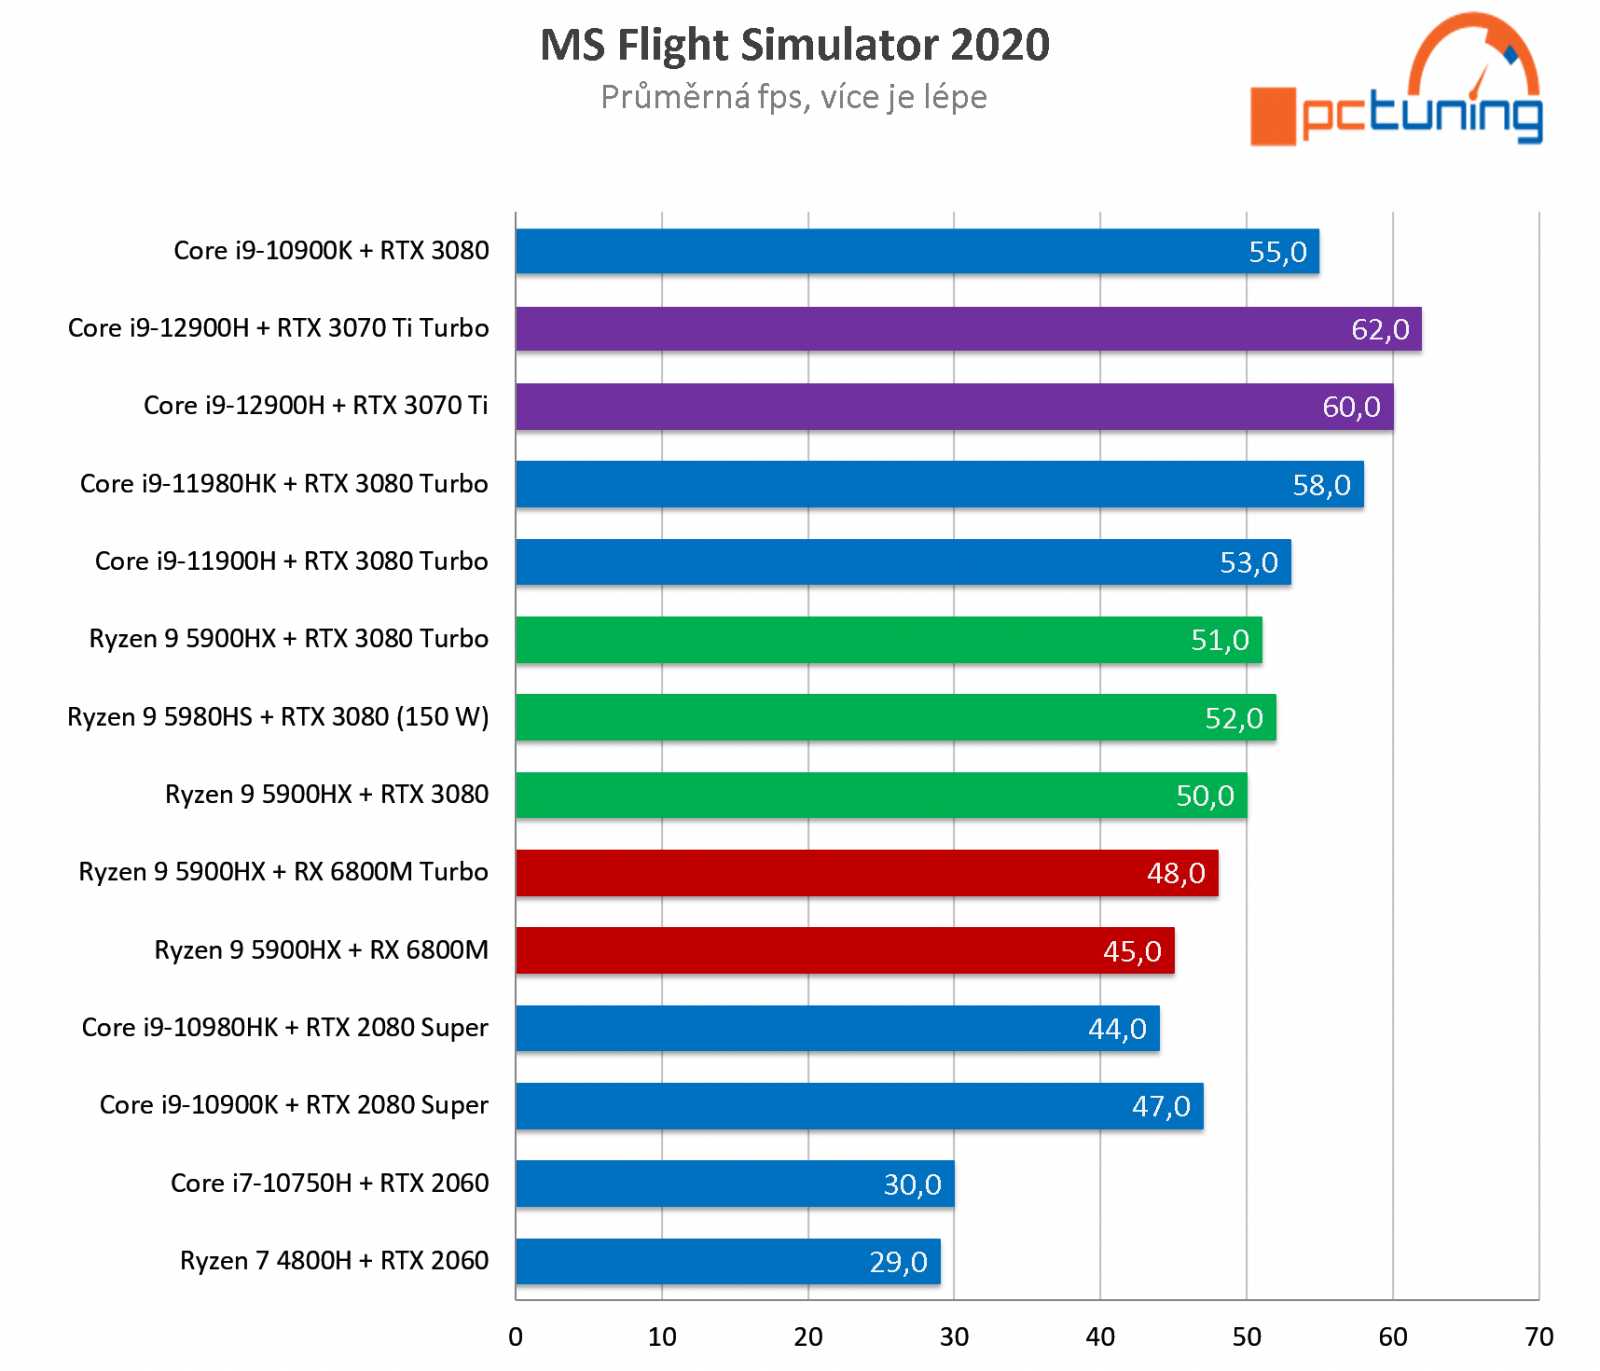 ASUS ROG STRIX SCAR 15: Nejvyšší nárůst výkonu za deset let